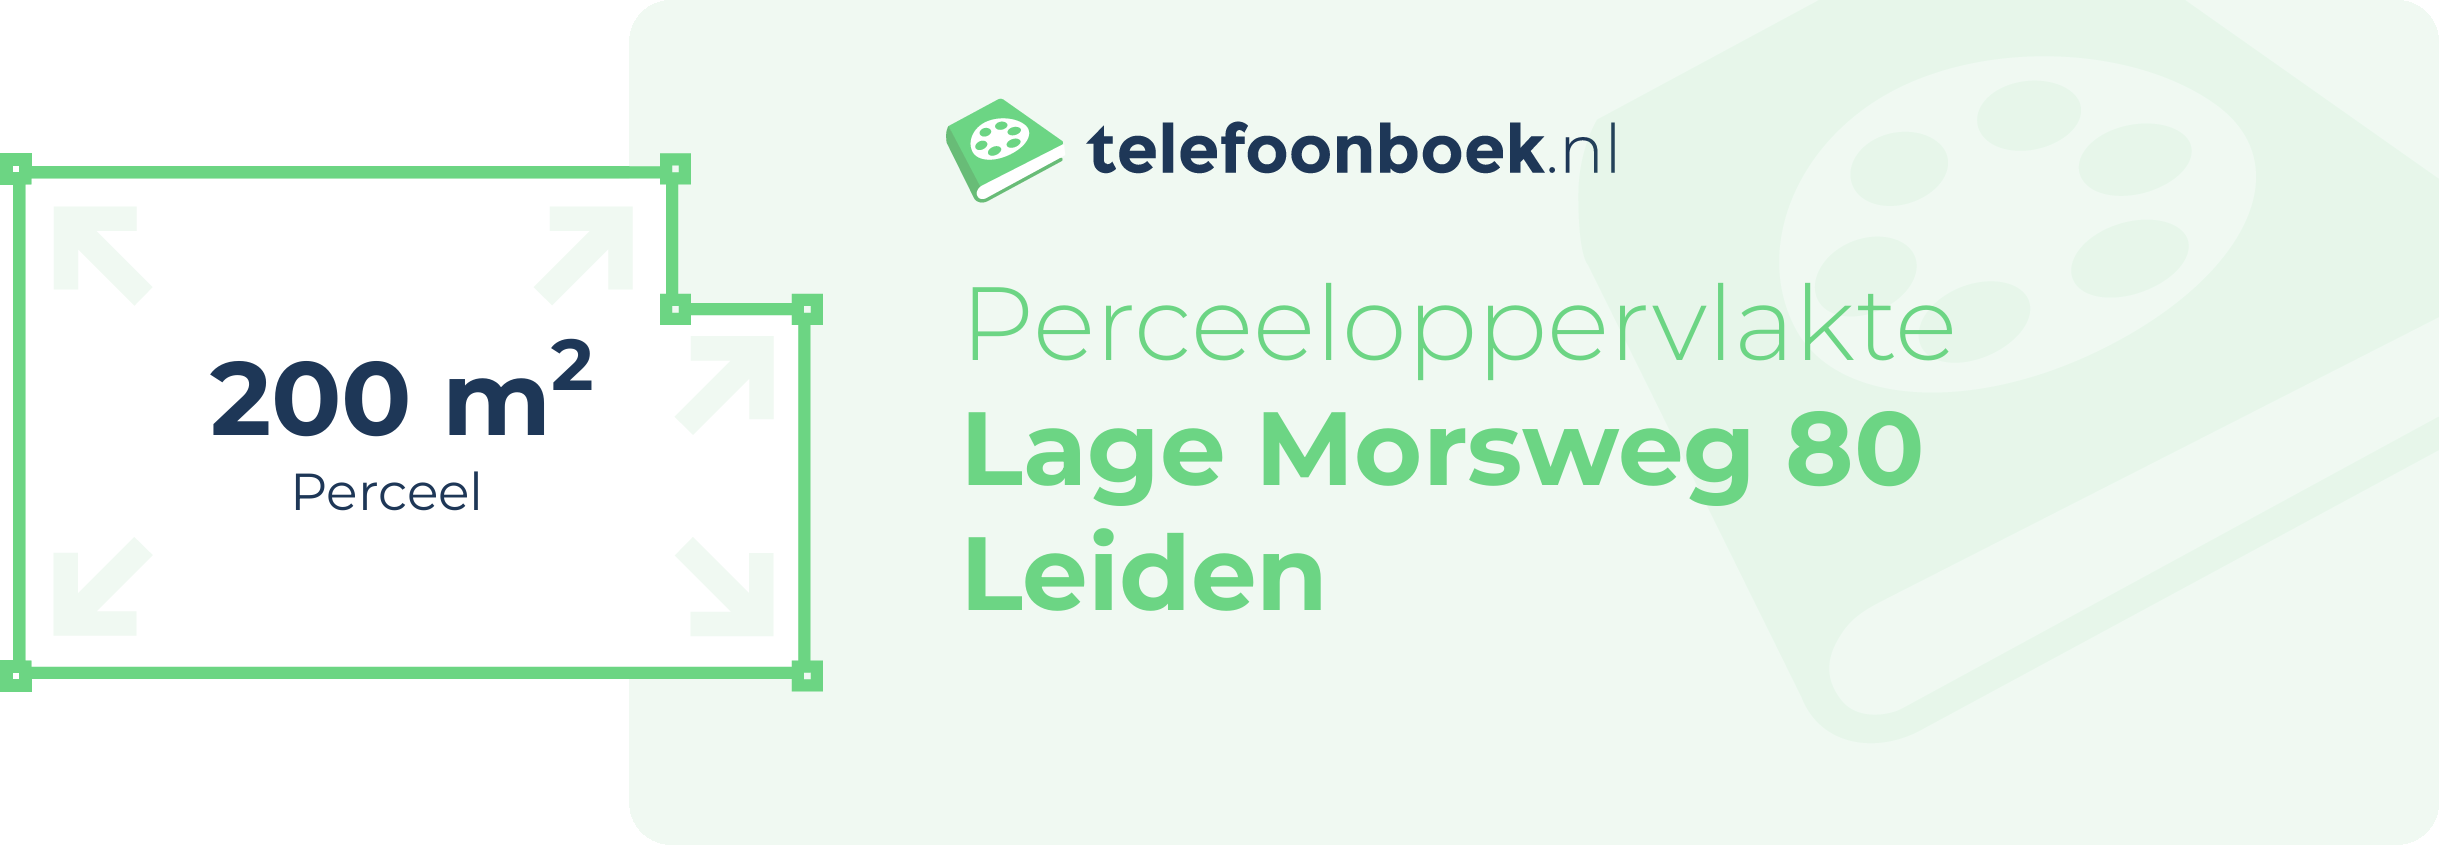 Perceeloppervlakte Lage Morsweg 80 Leiden